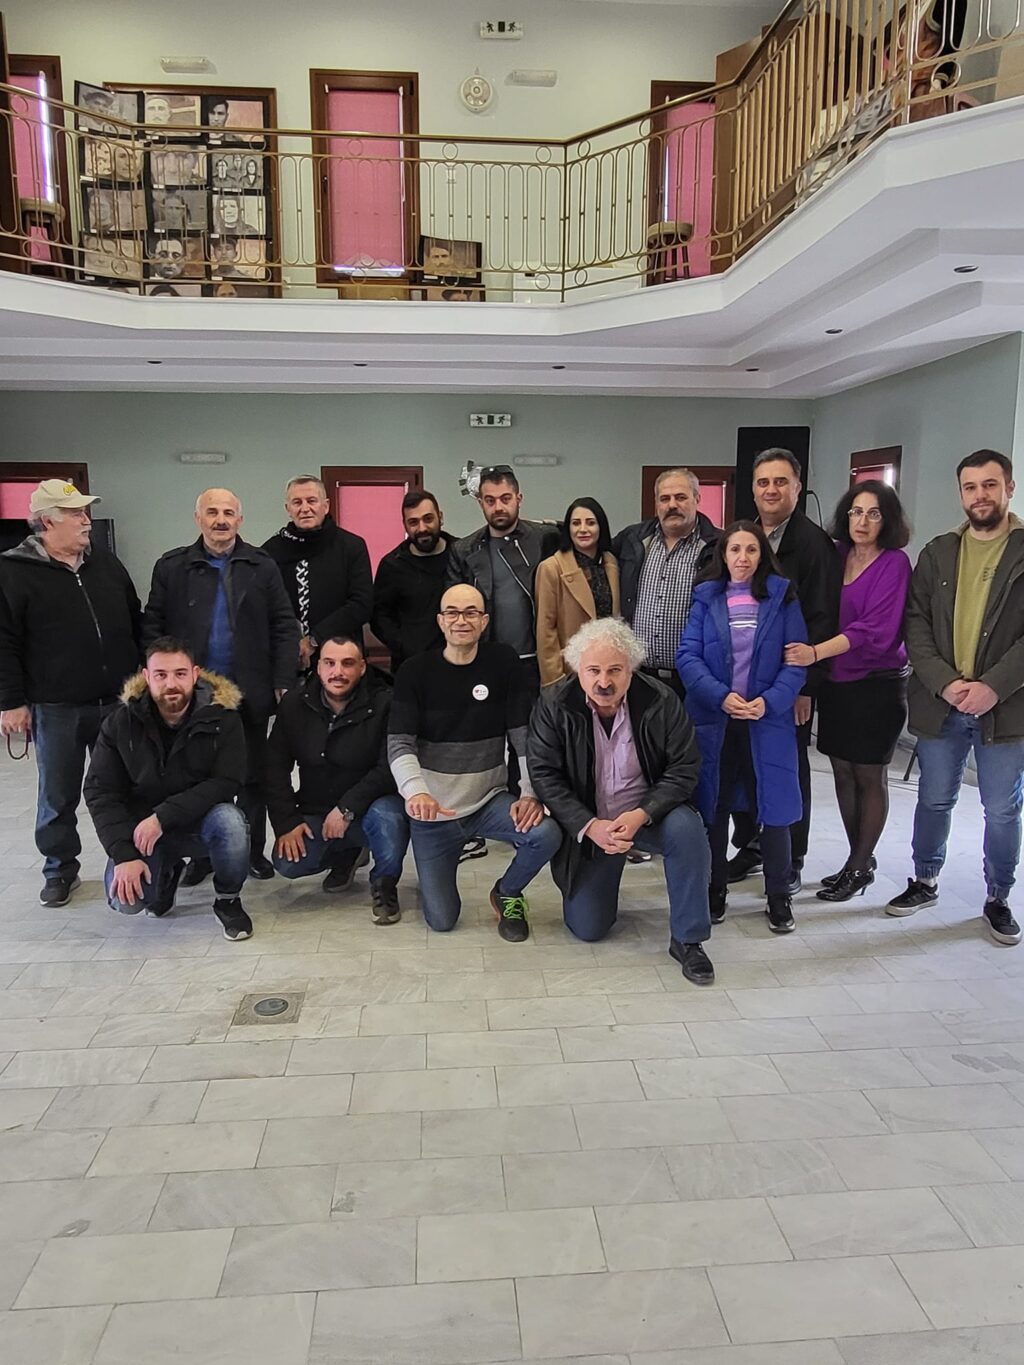 Συνάντηση των Ποντιακών Σωματείων του Ν. Καστοριάς (στην Εύξεινο λέσχη Άργους Ορεστικού)